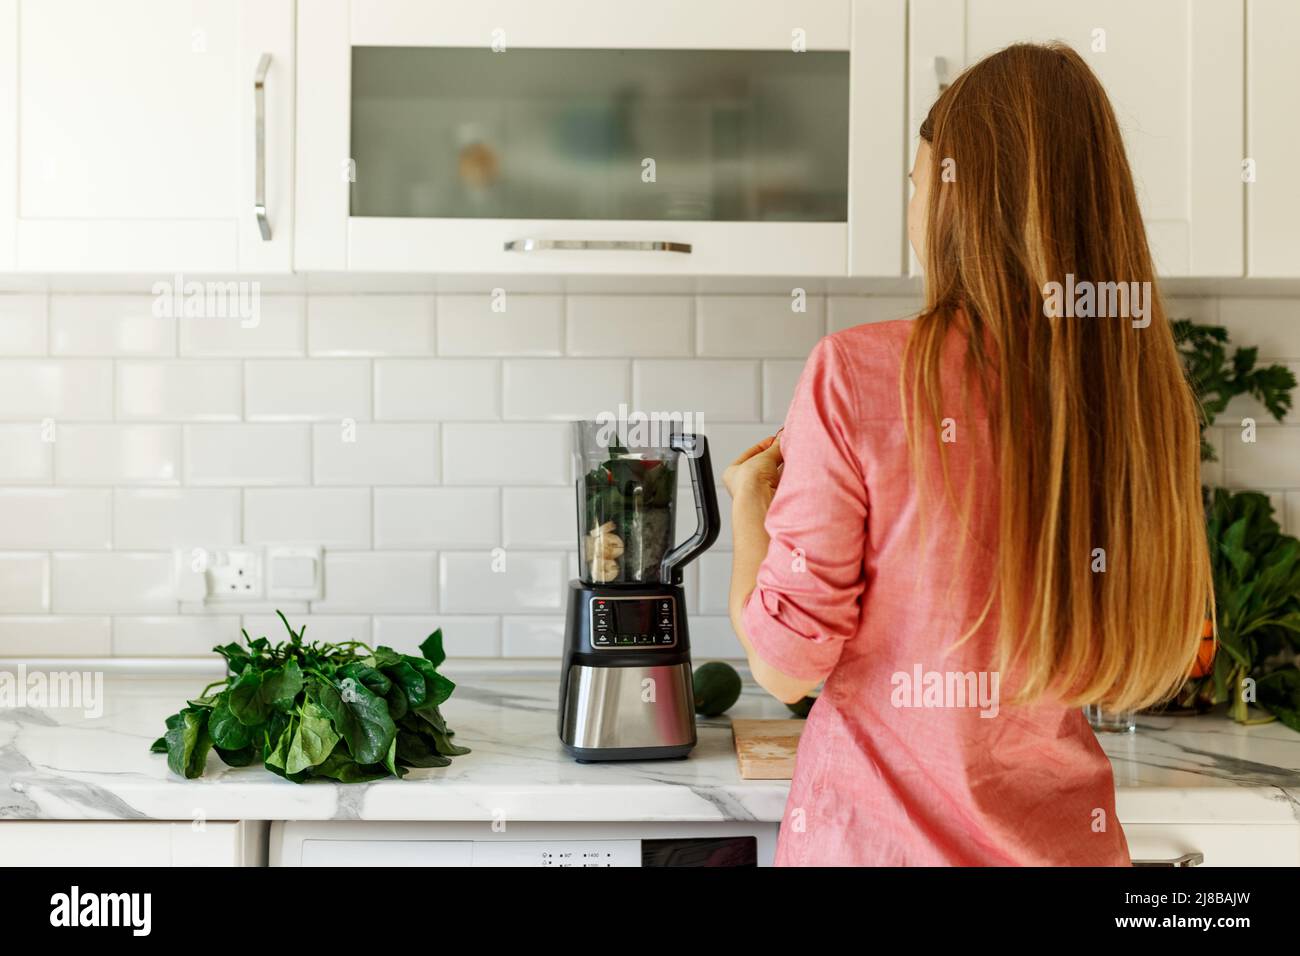 Frau bereitet leckeren grünen Smoothie in der Küche, Blick von hinten Stockfoto